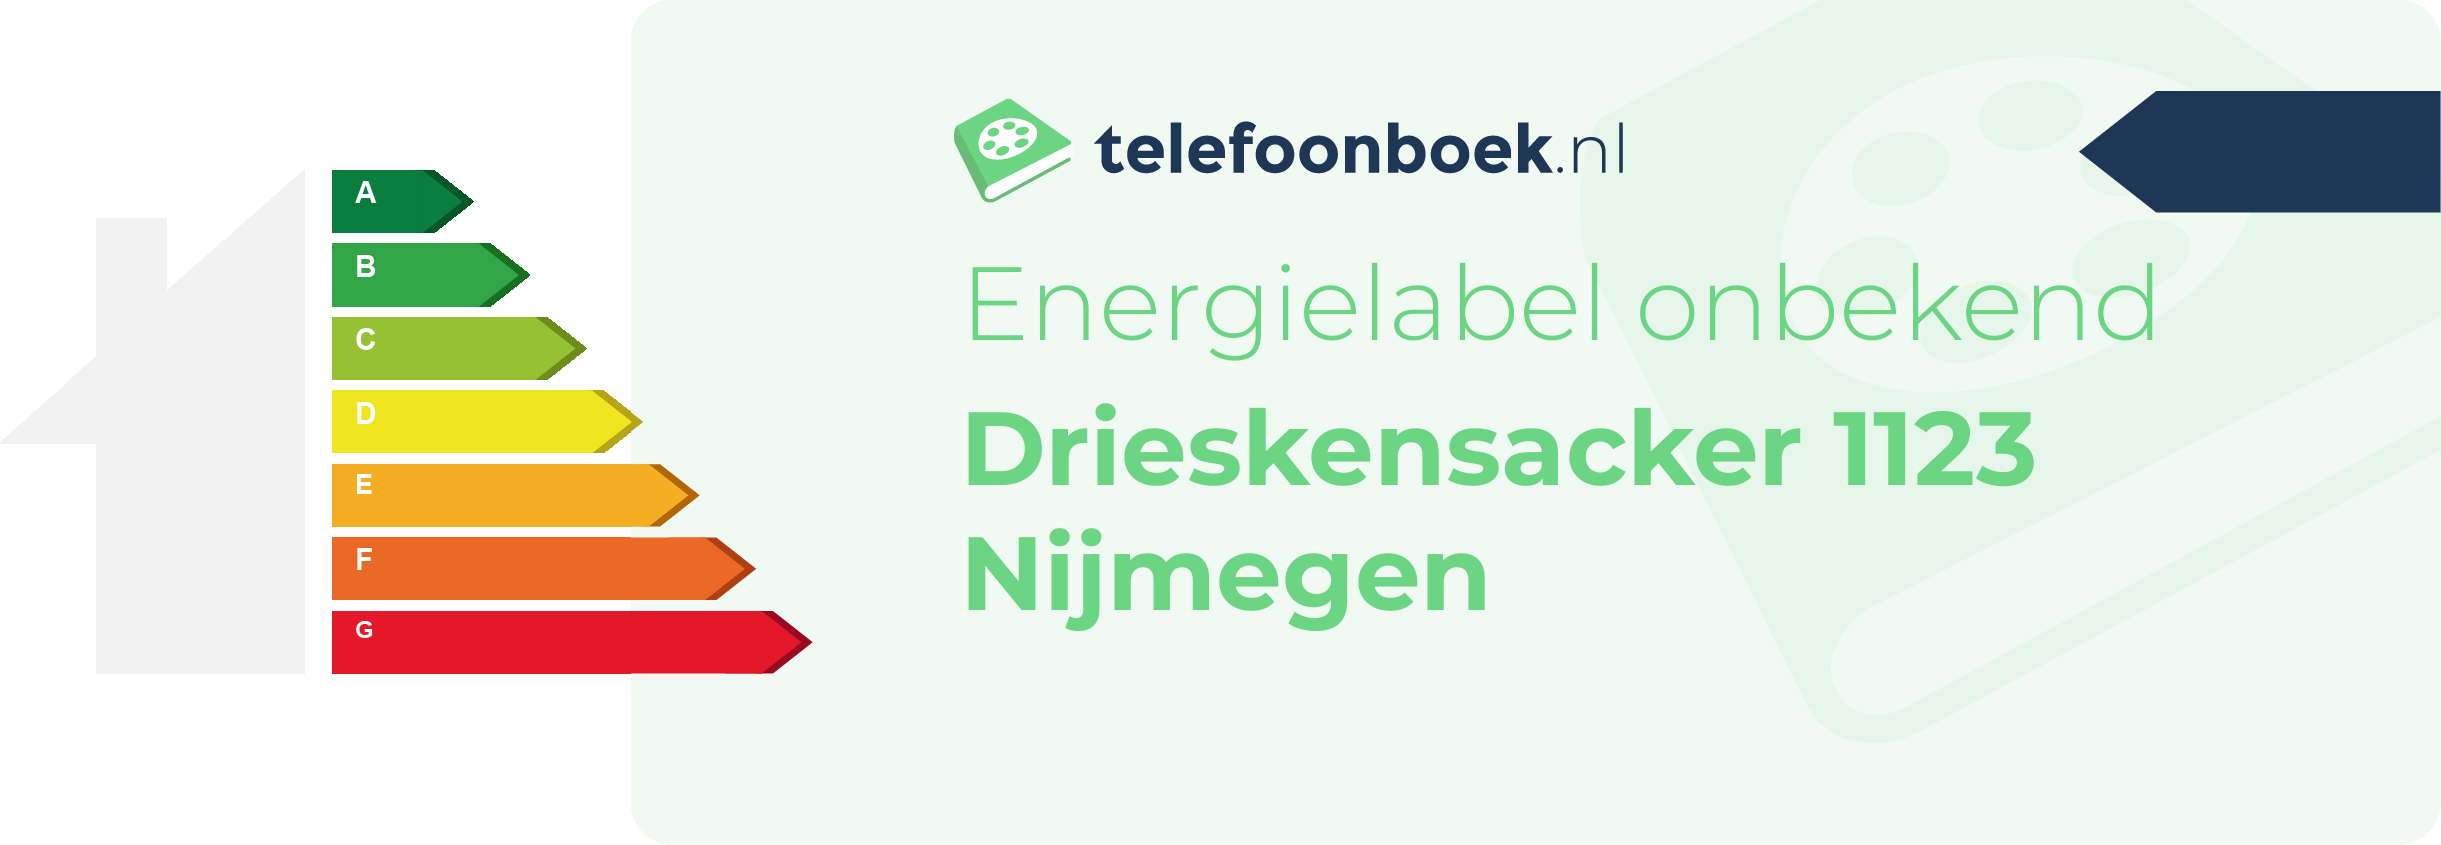 Energielabel Drieskensacker 1123 Nijmegen